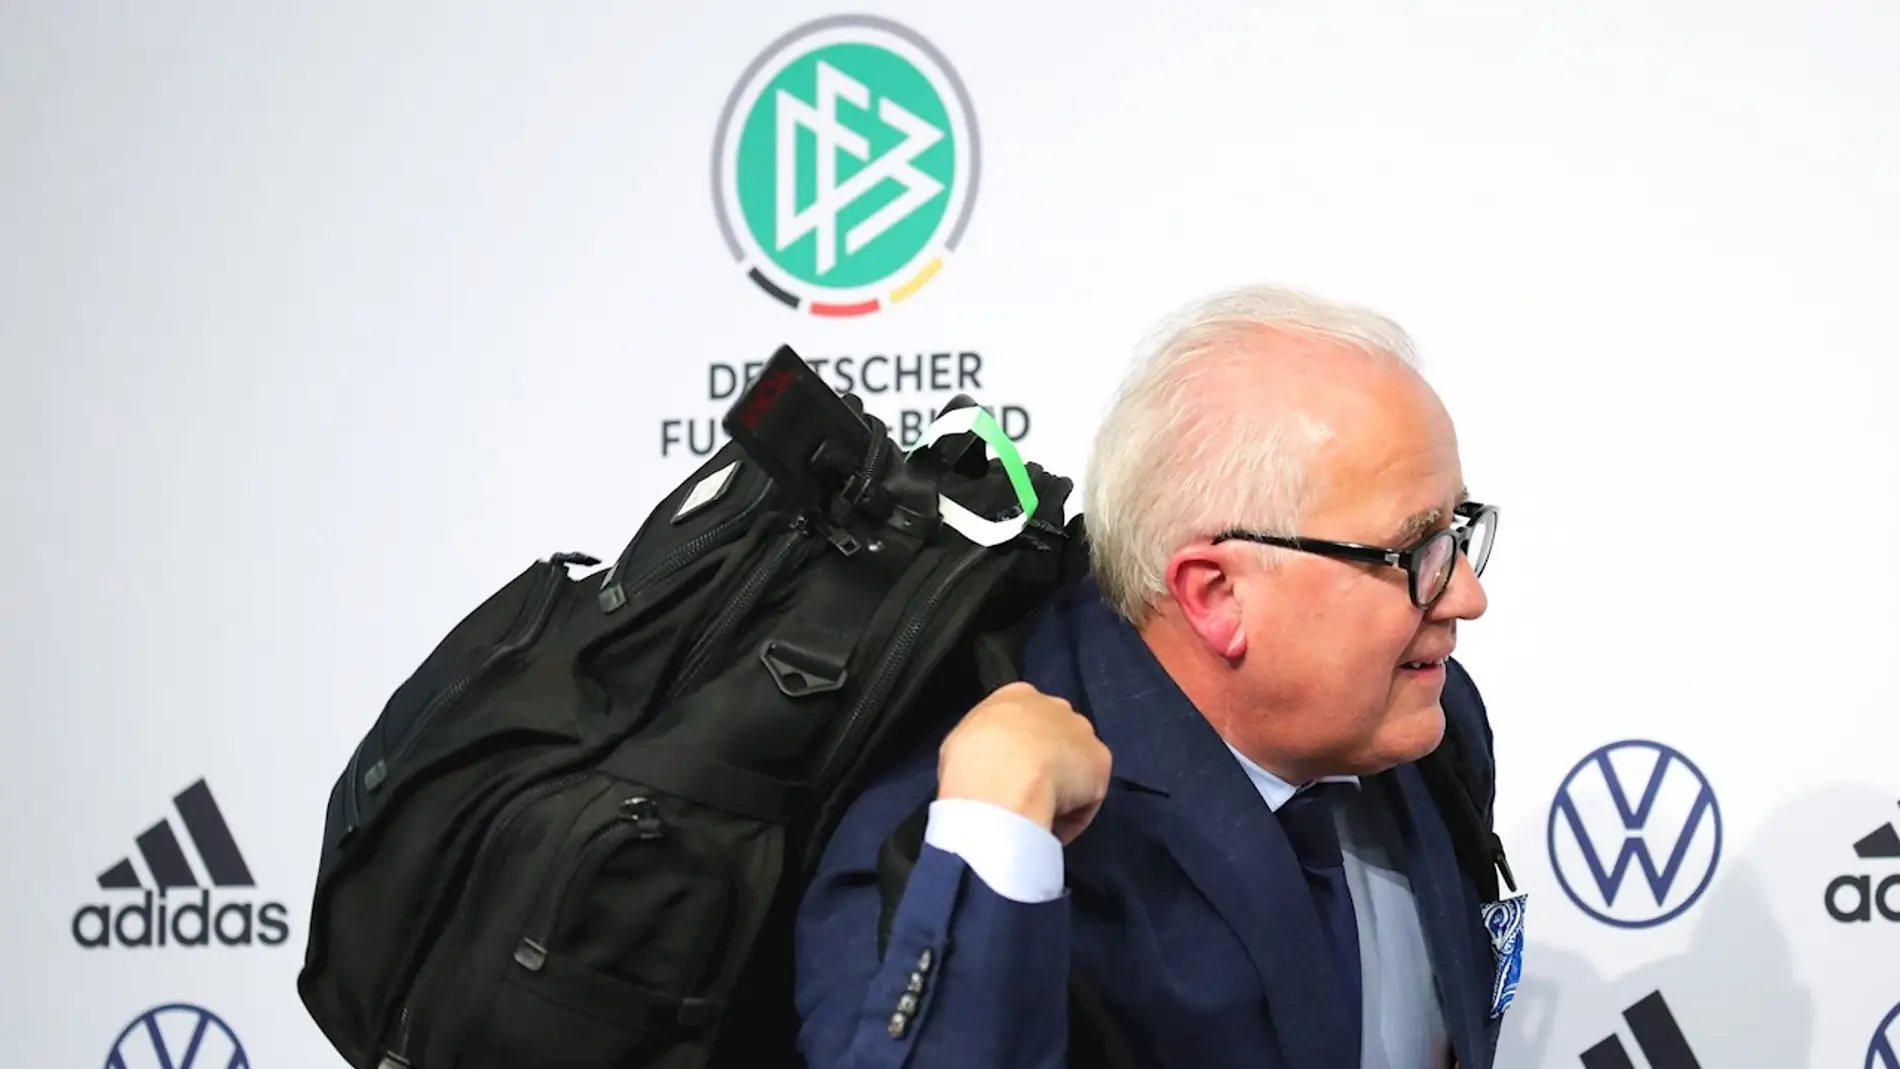 Escándalo en la Federación Alemana de Fútbol: El presidente dimite tras comparar a su segundo con un juez nazi